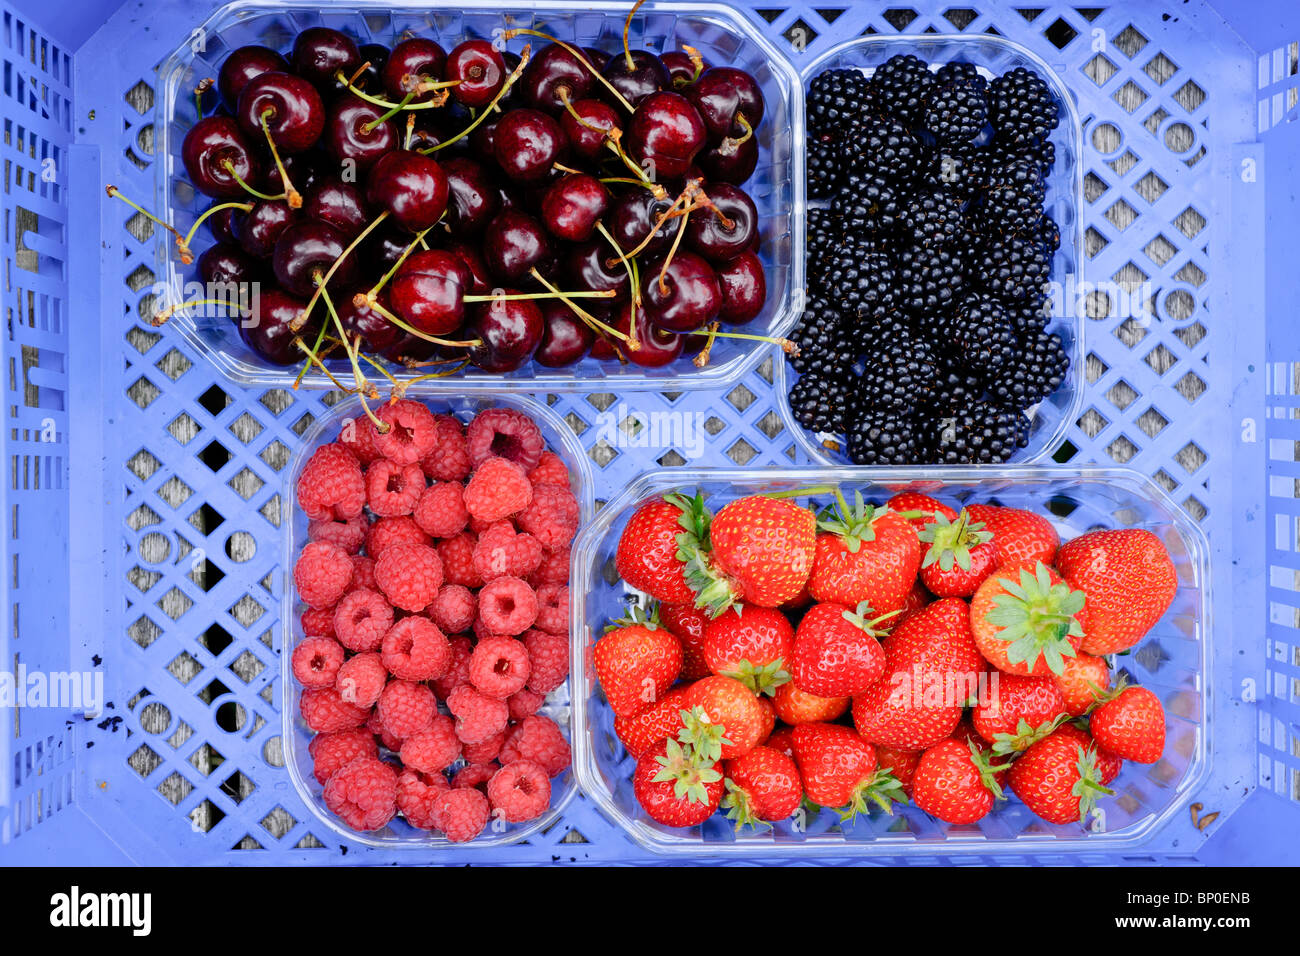 Körbchen von Früchten wie Erdbeeren, Himbeeren, Brombeeren und Kirschen in einer bluebox. Stockfoto